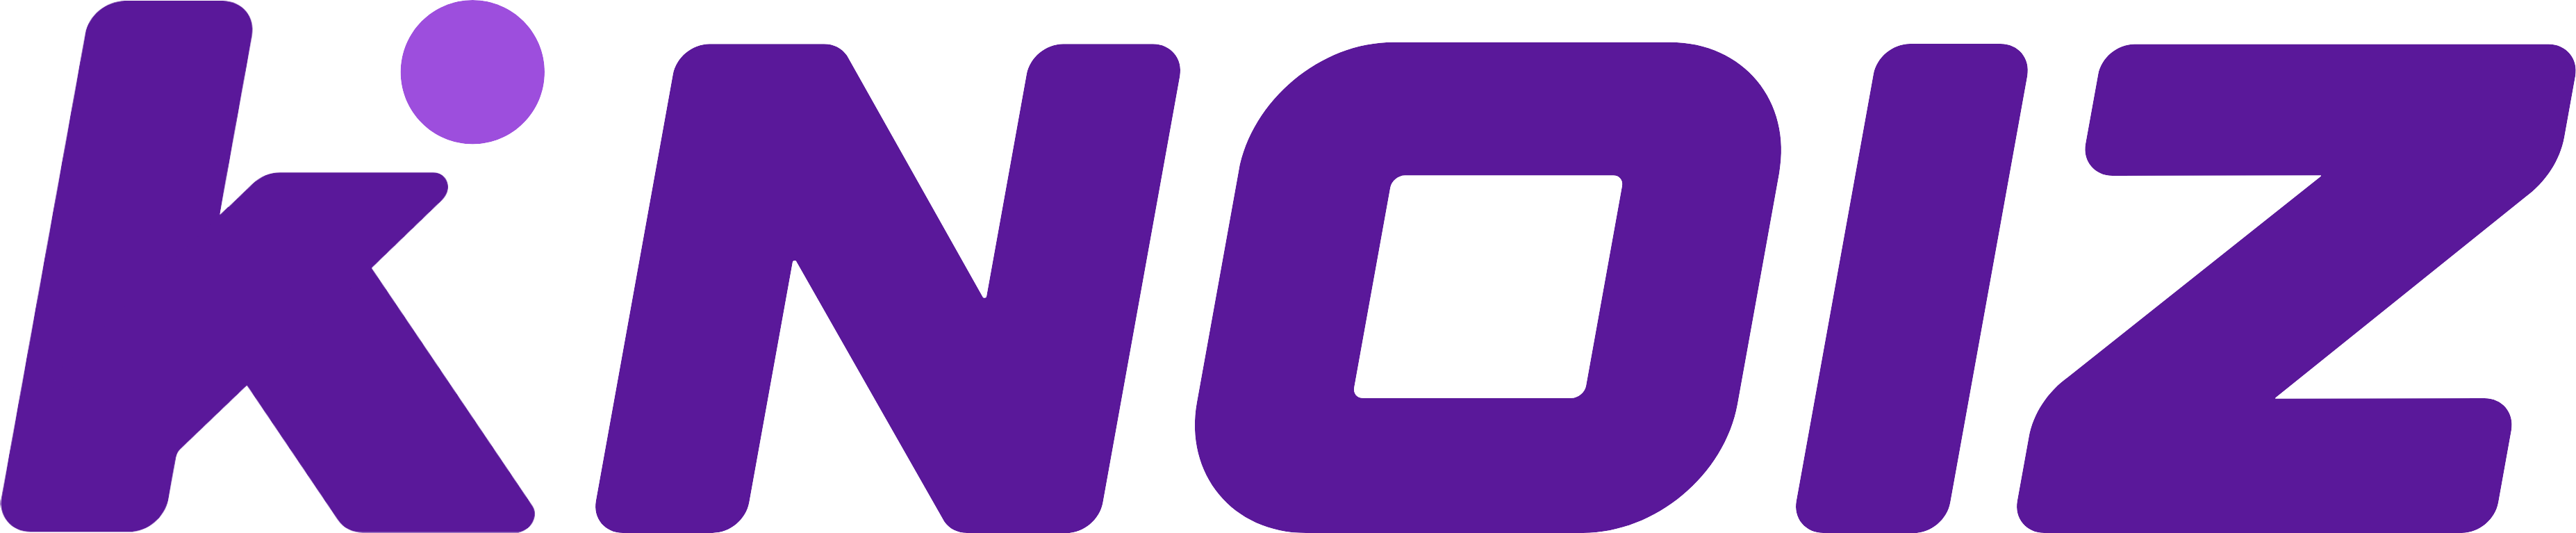 Knoiz logo